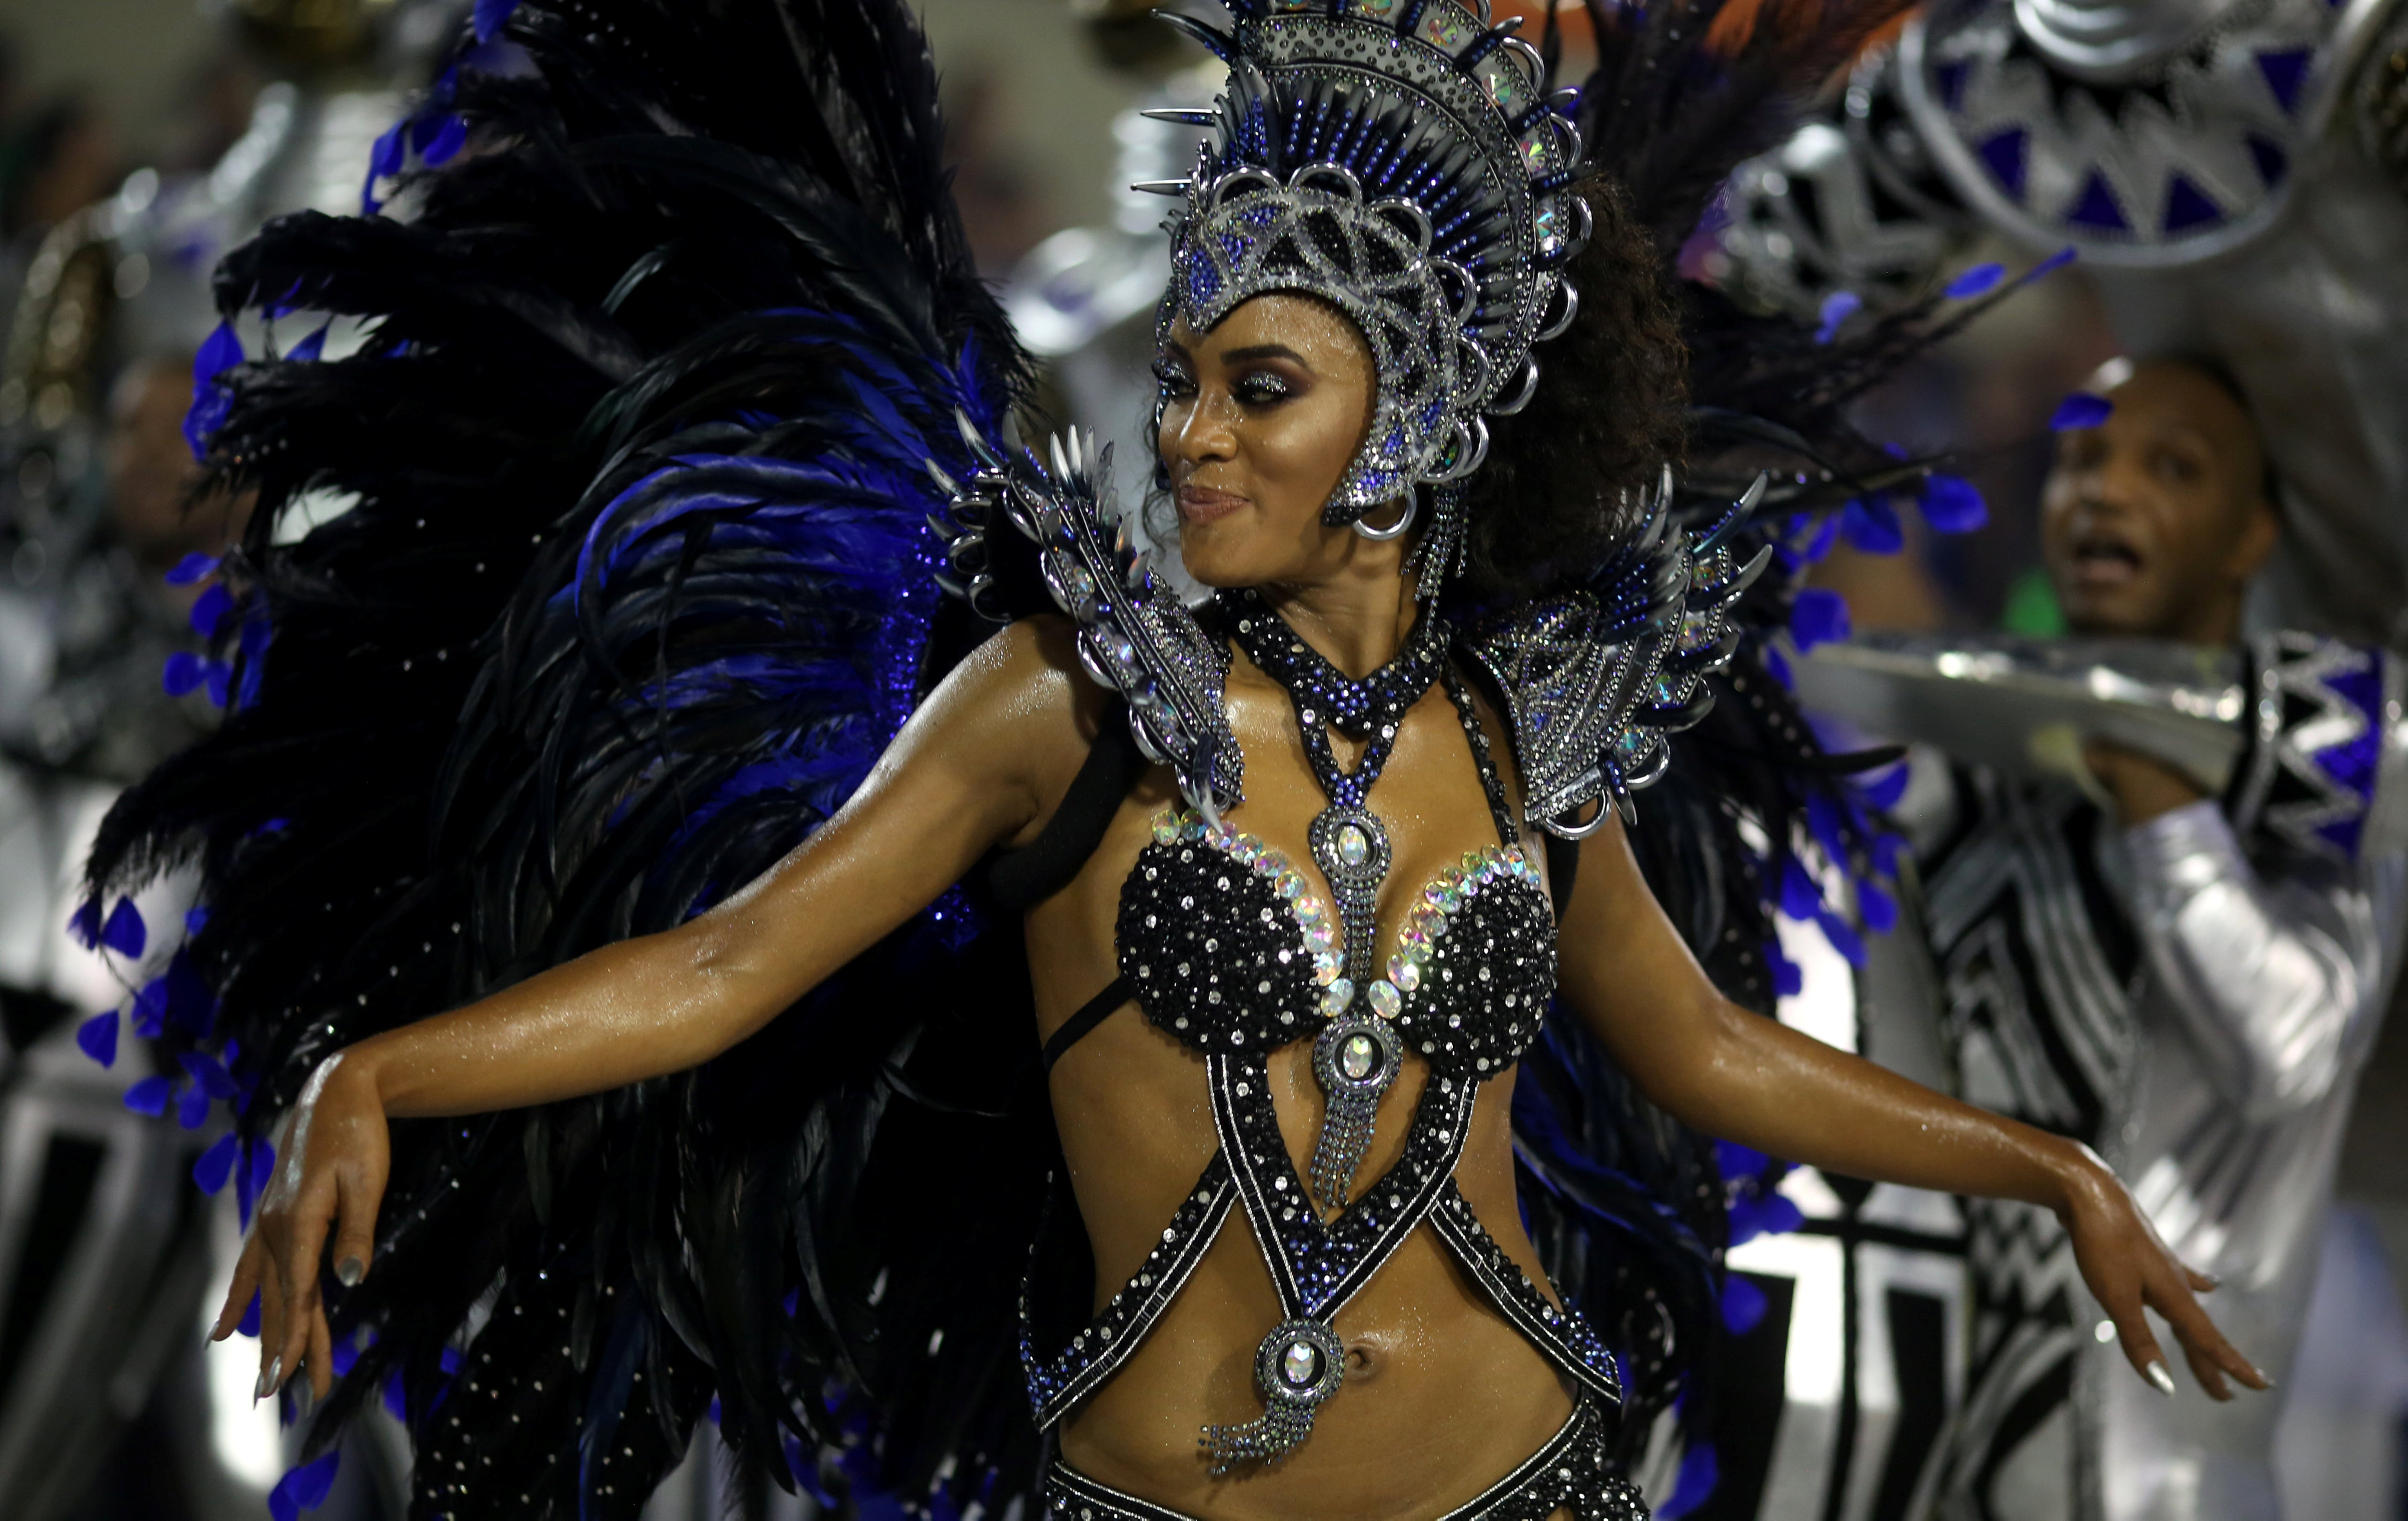 فتاة ترقص خلال عرض لكرنفال احياء رقصة السامبا فى البرازيل